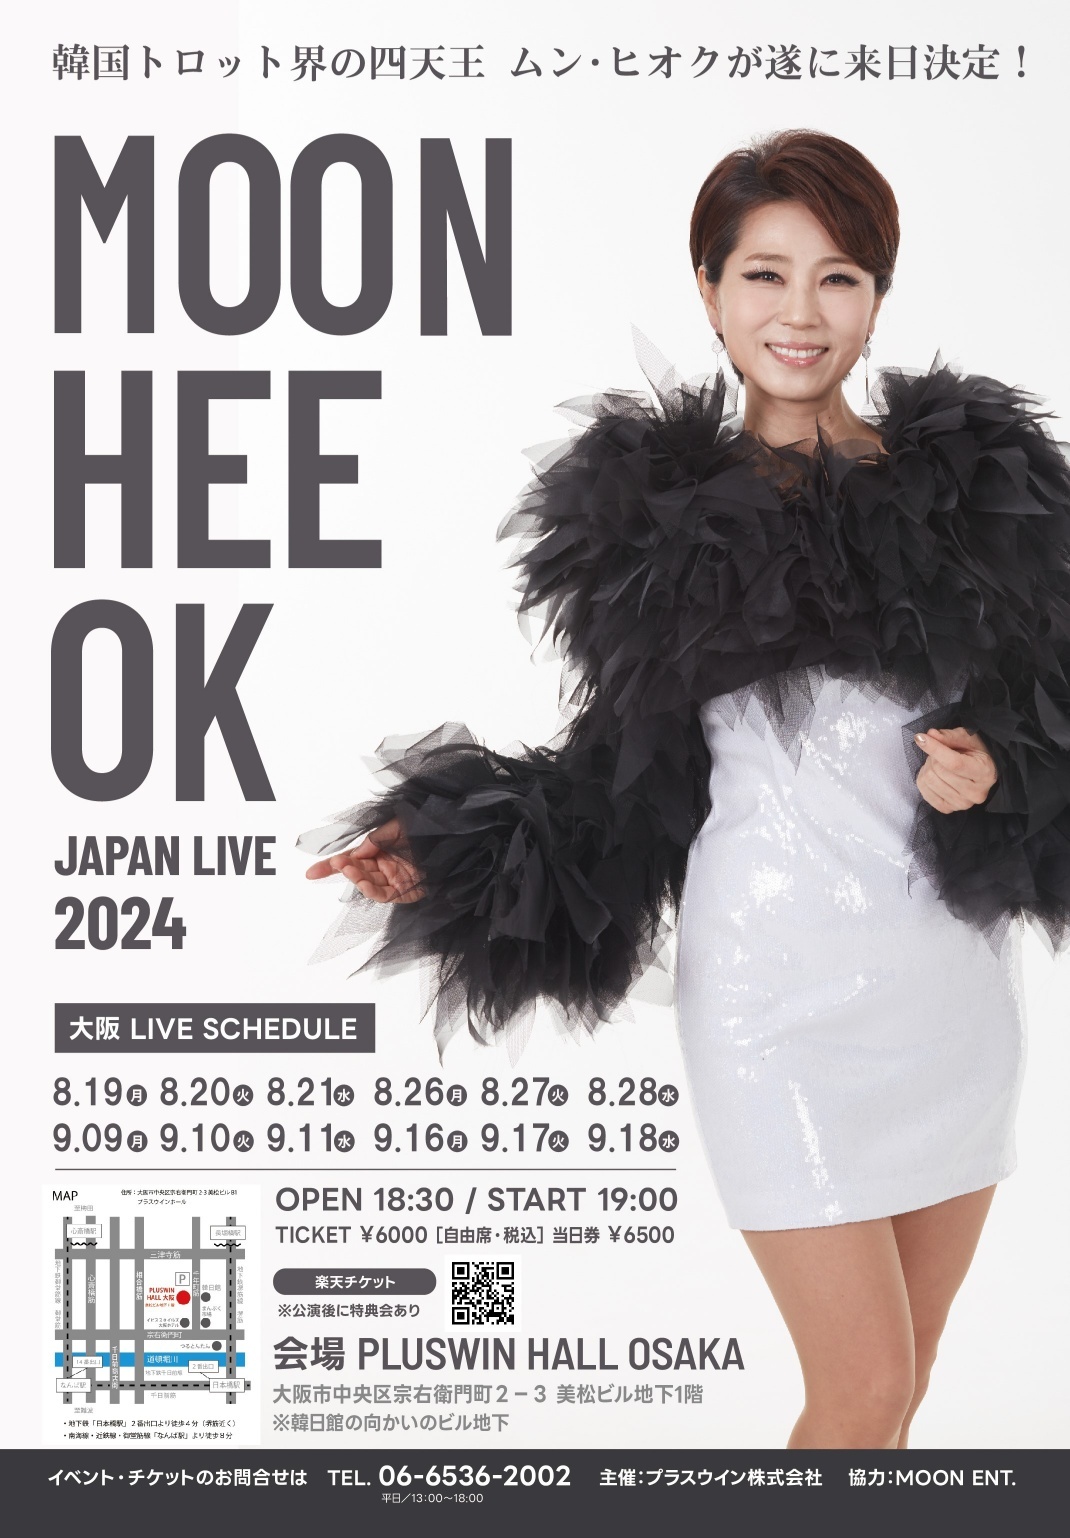 韓国トロット界の女四天王ムン・ヒオク、
大阪での来日公演が決定！
「MOON HEE OK JAPAN LIVE 2024」